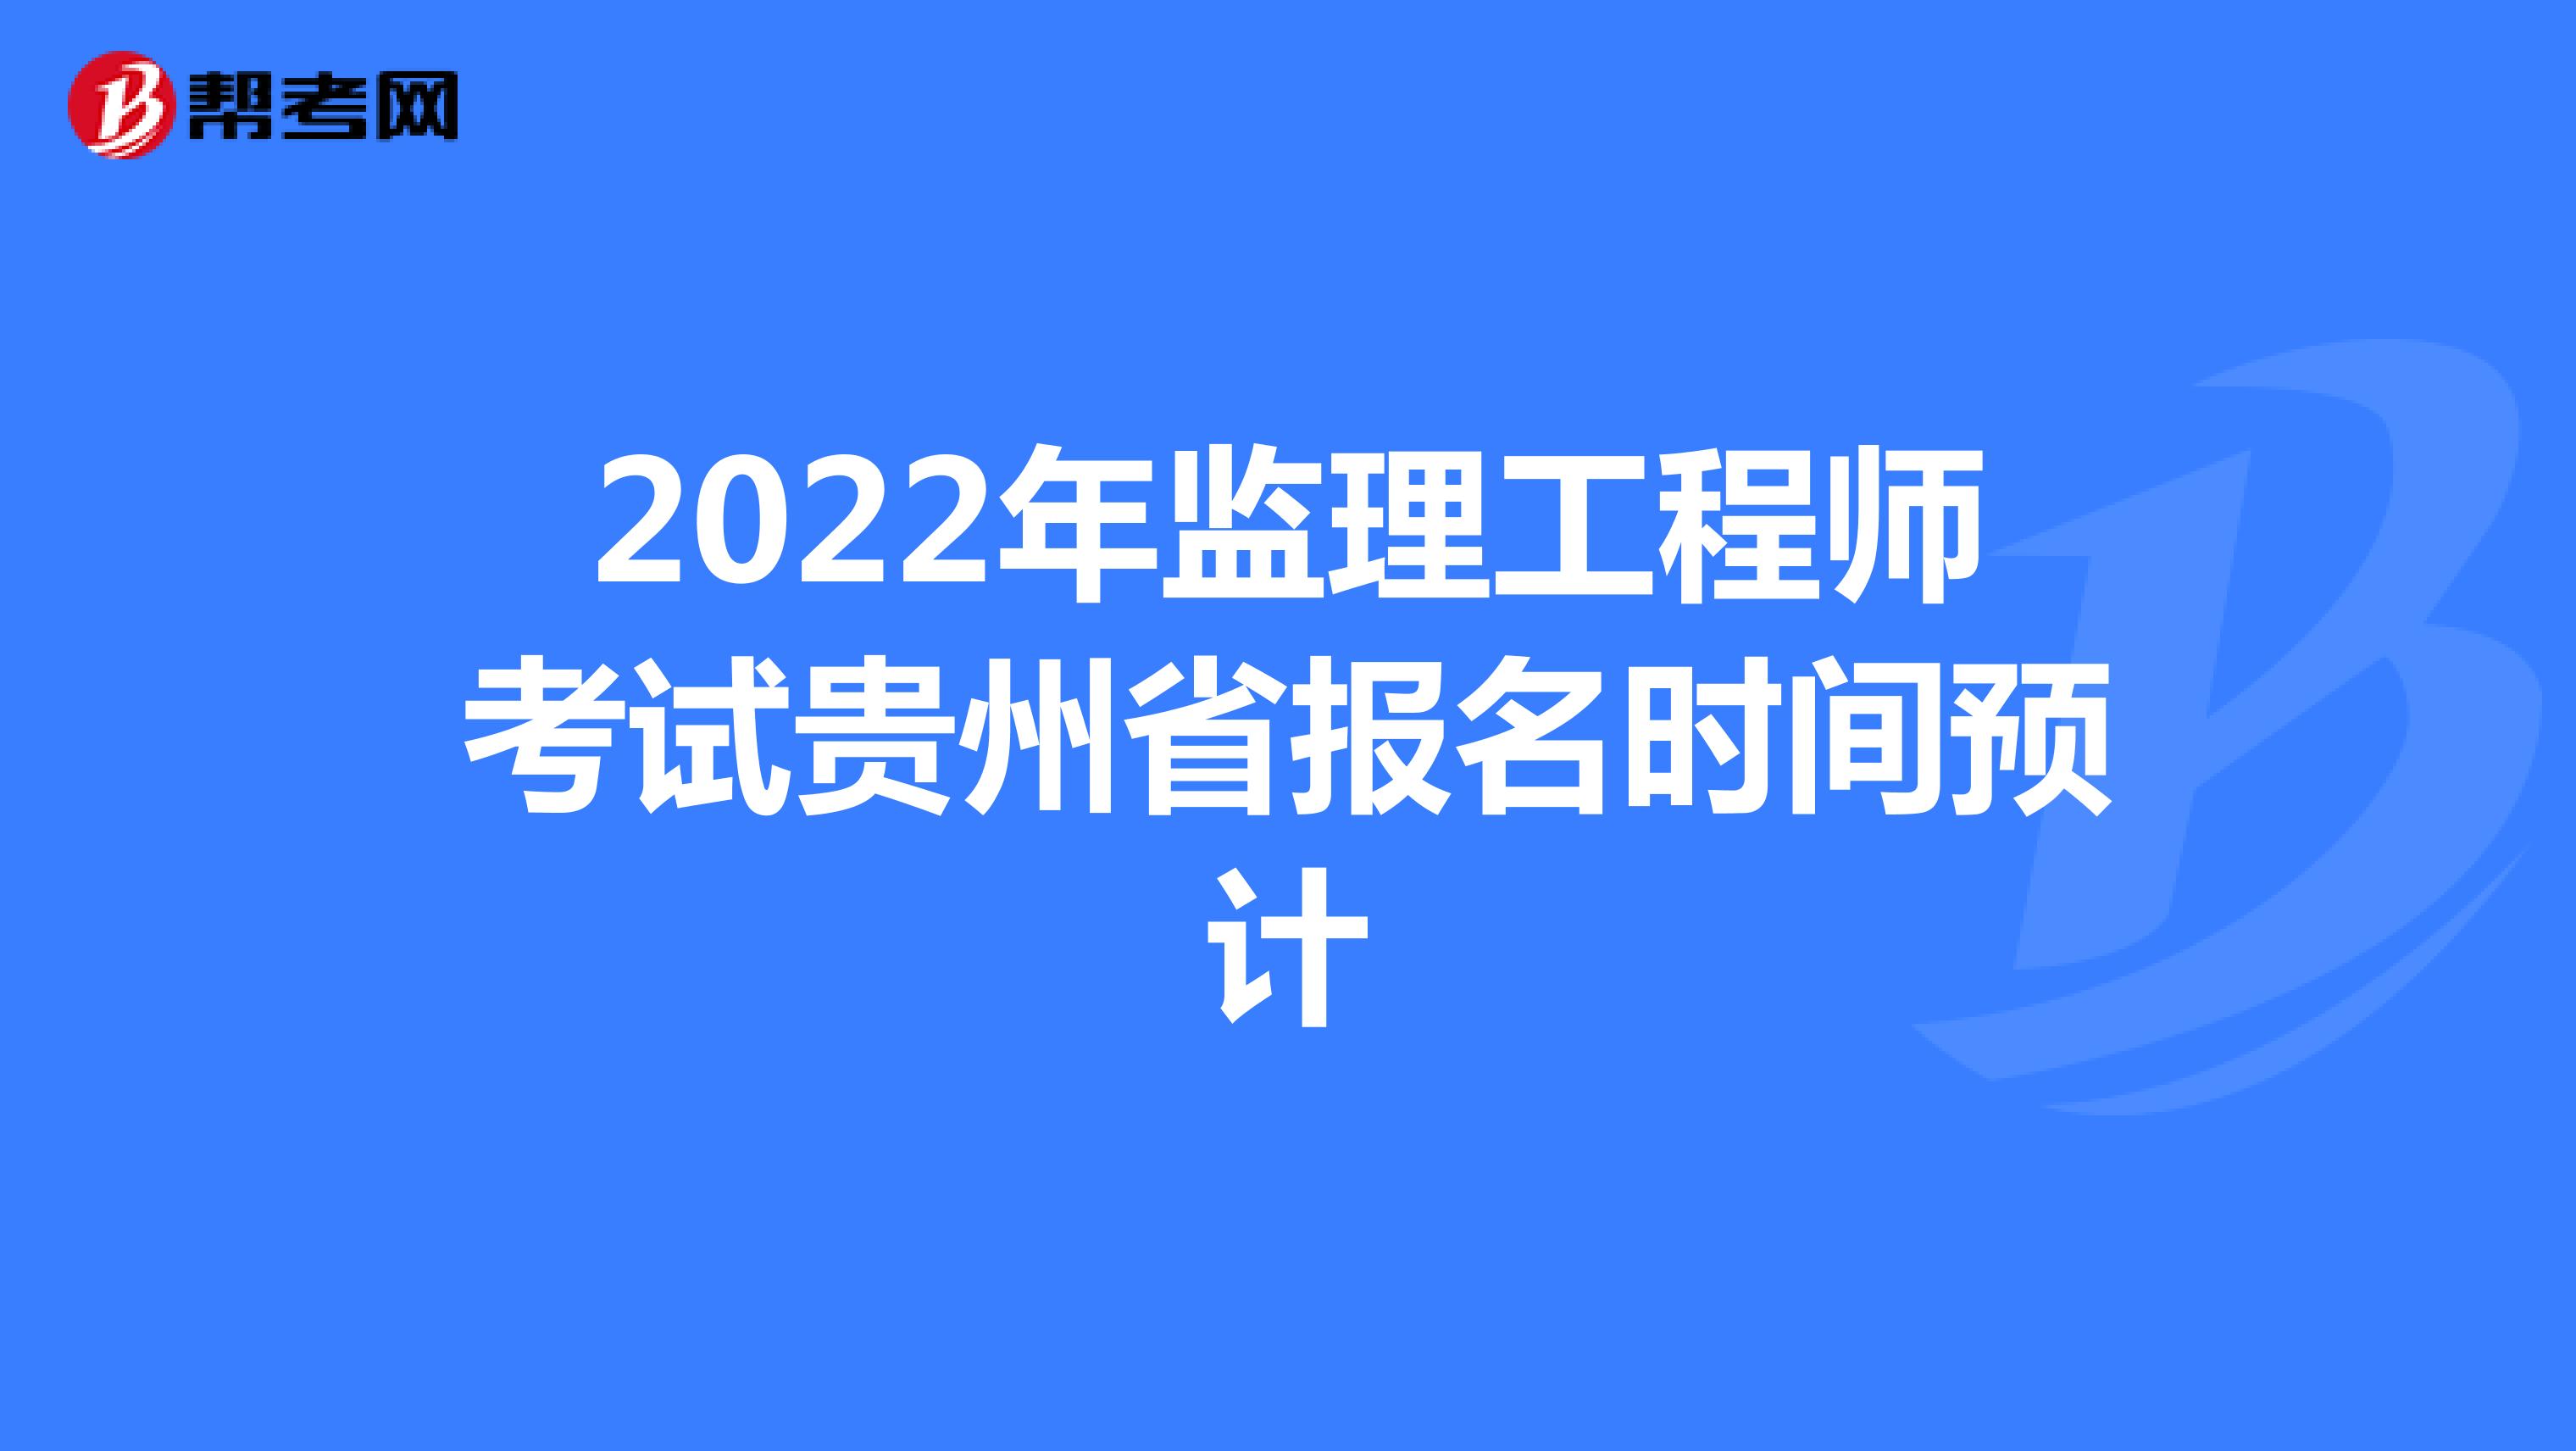 2022年监理工程师考试贵州省报名时间预计